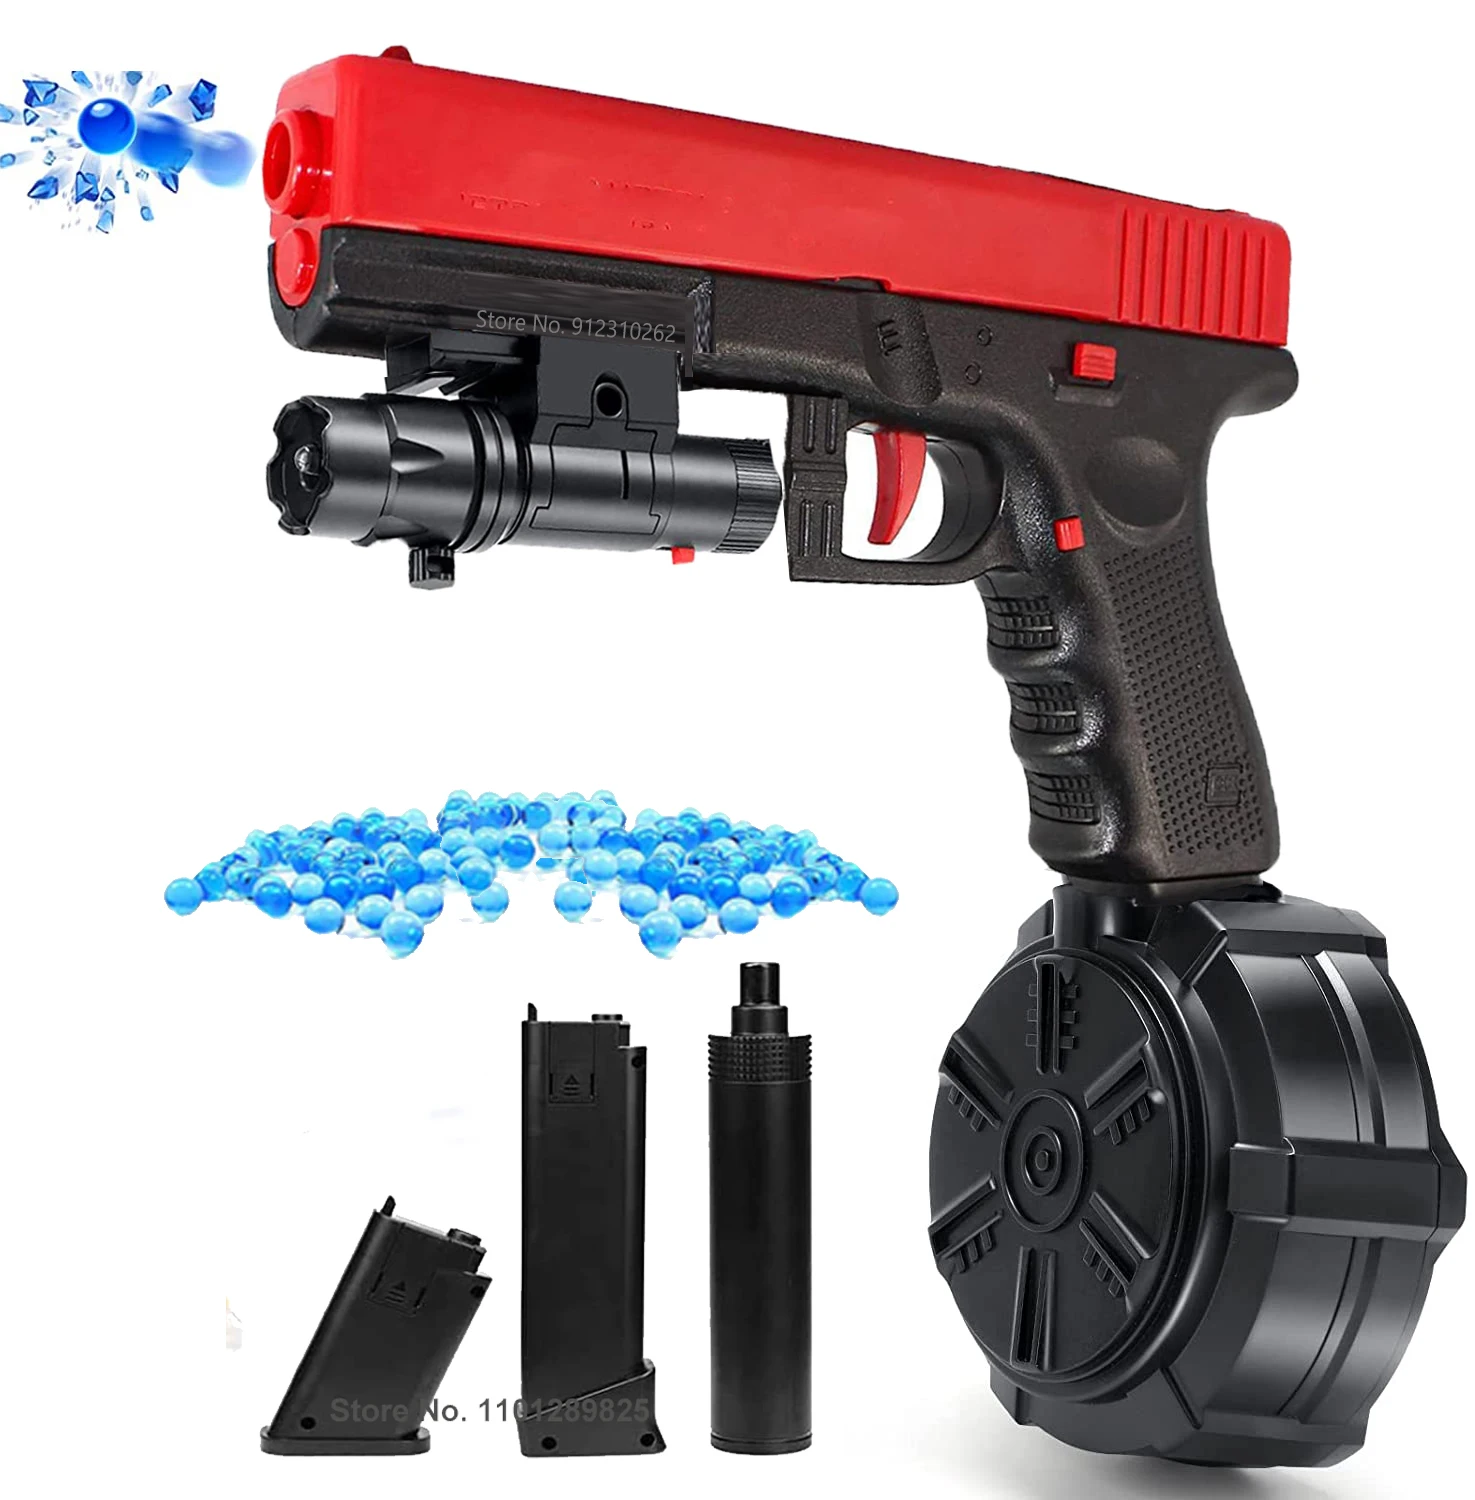 

JM X2 Electric Gel Blaster Water Splatter Ball Toy Gun Paintball Pistol Outdoor Games CS Airsoft Handgun For Boys Adult Gift